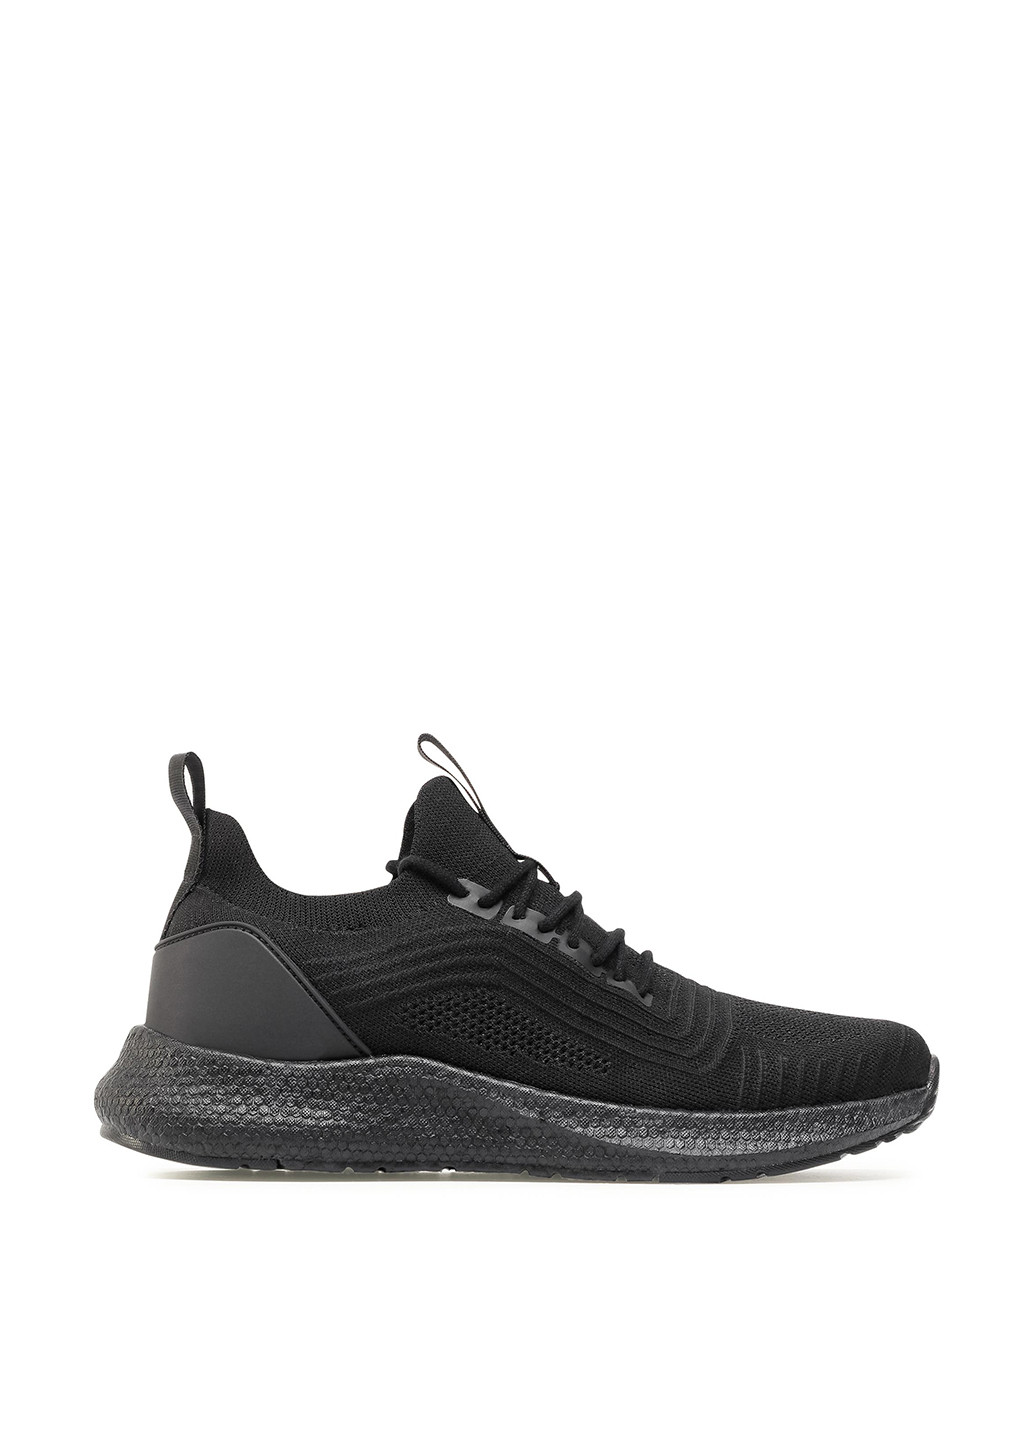 Черные демисезонные кроссовки Sprandi MP07-01434-01